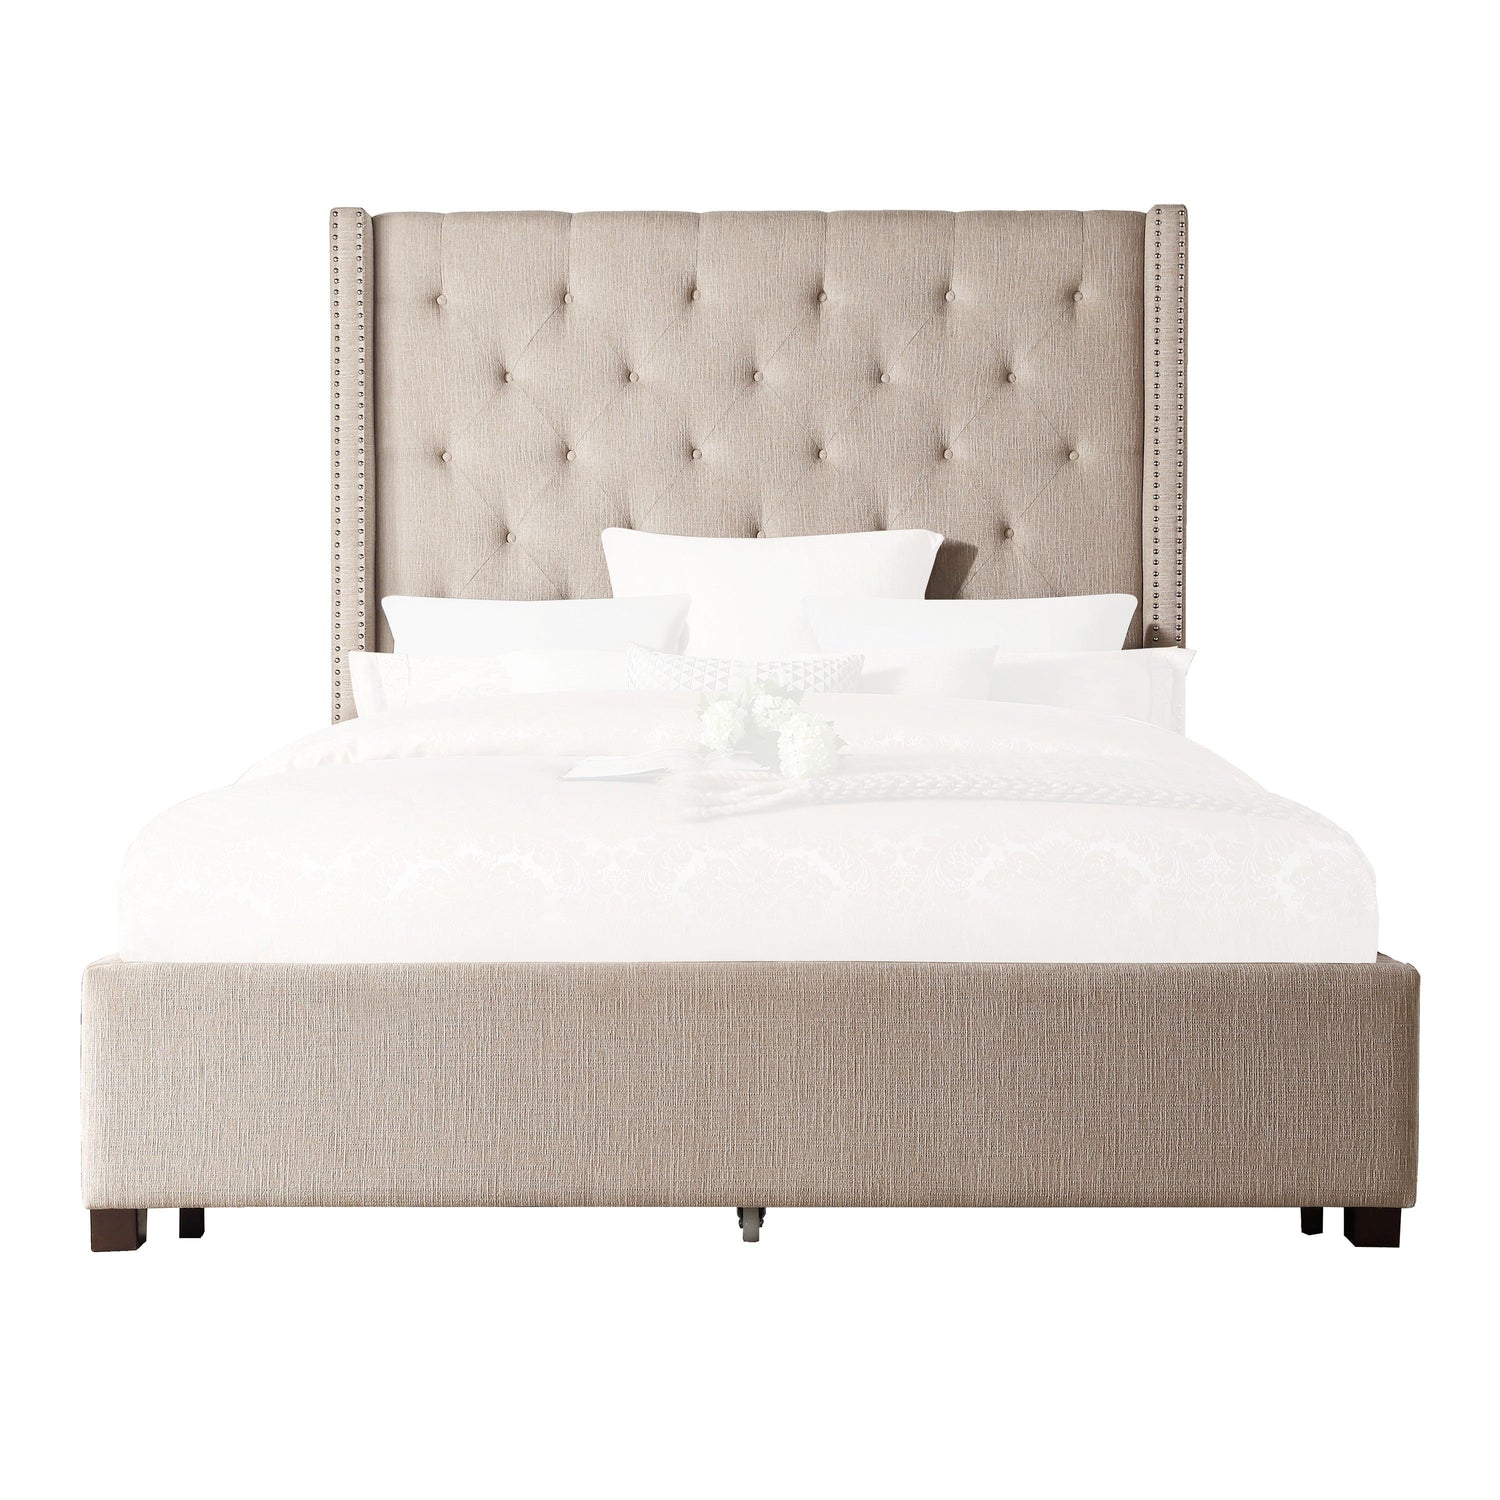 Fairborn Beige King Upholstered Storage Platform Bed - SET | 5877KBE-1 | 5877KBE-3EK | 5877K-2DW - Bien Home Furniture &amp; Electronics